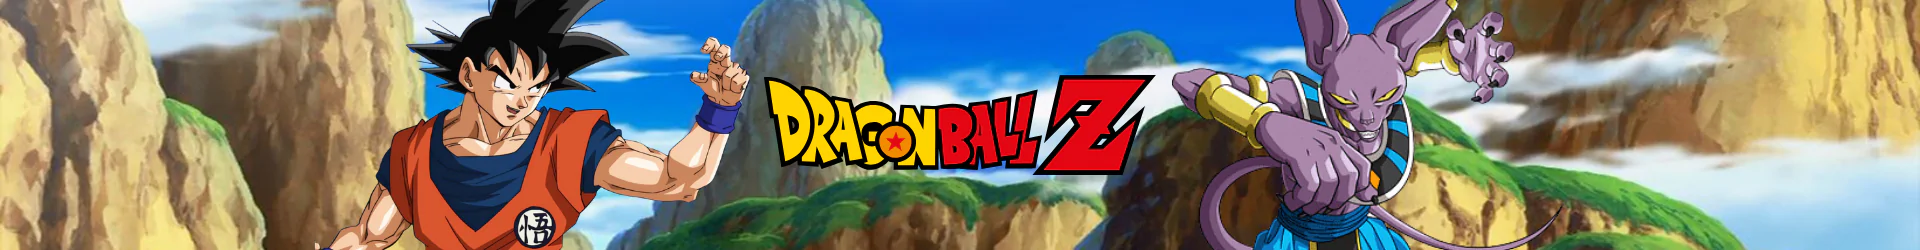 Dragon Ball figuren banner